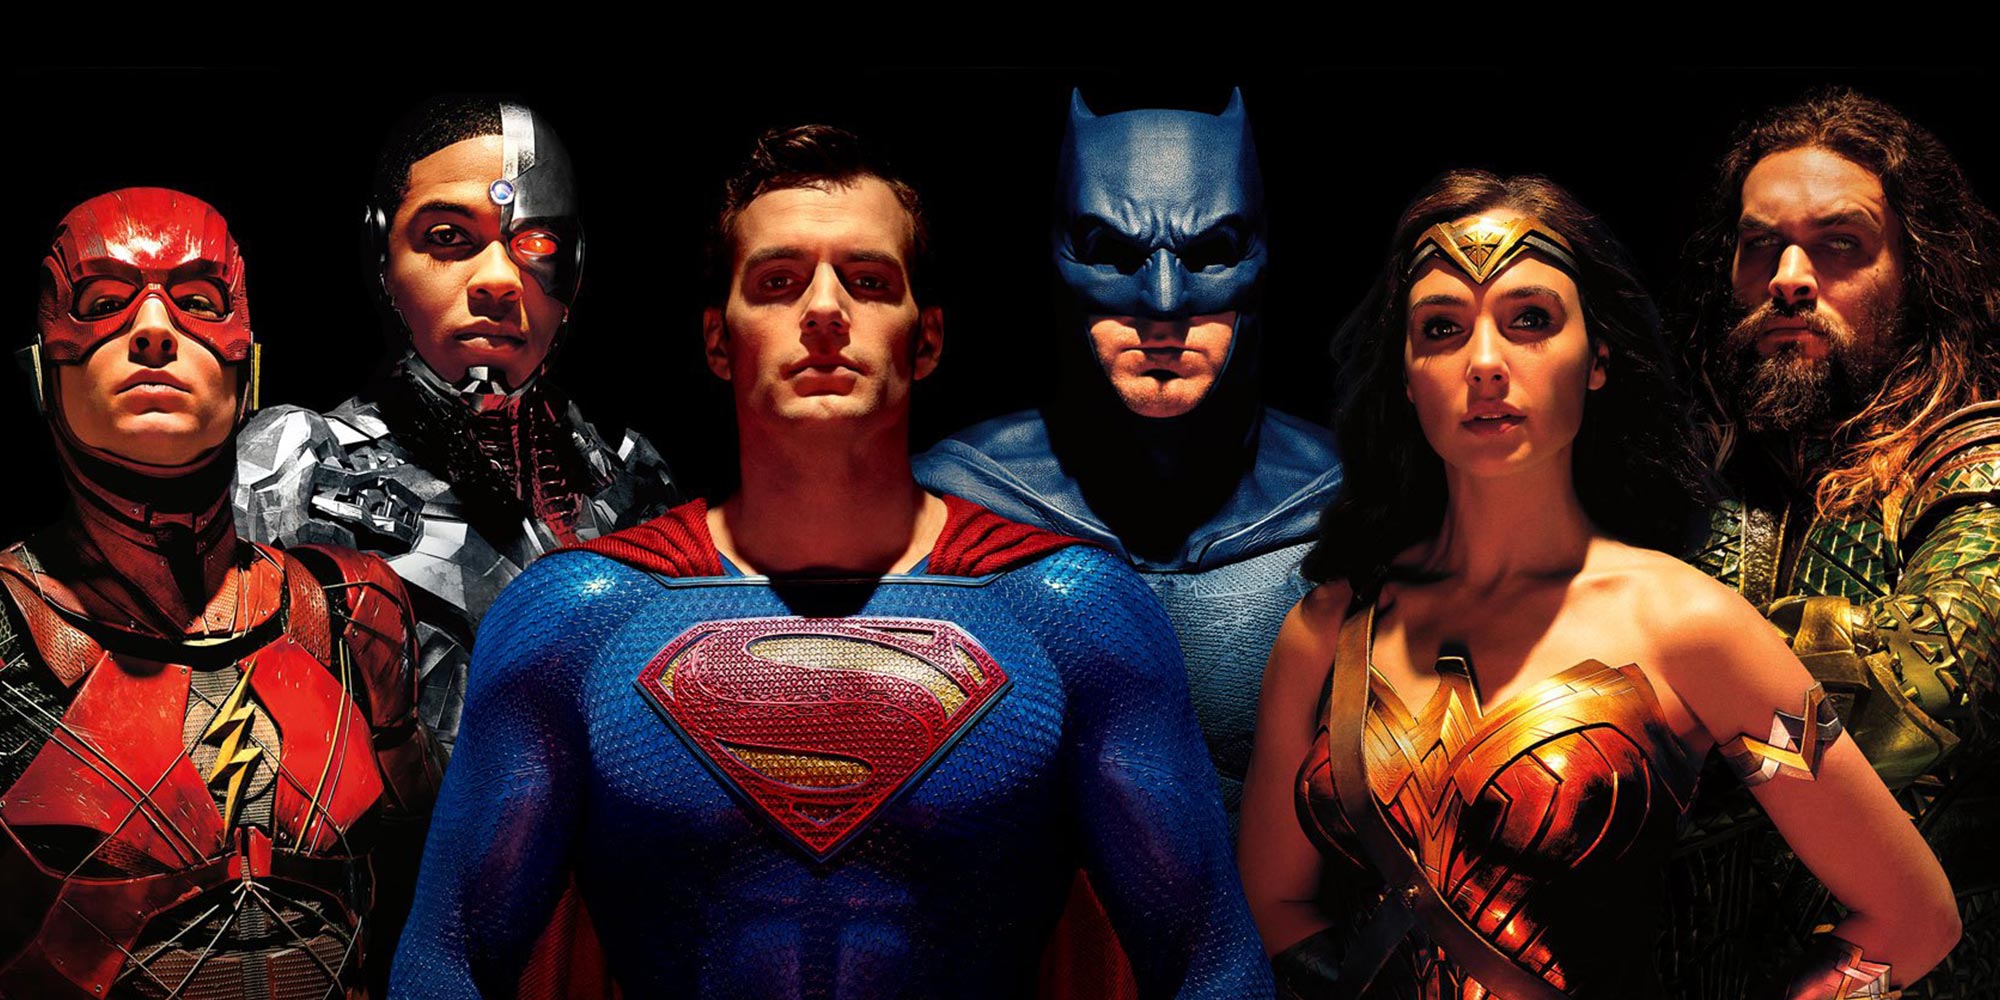  Justice League prépare sa sortie en DVD et Bluray…